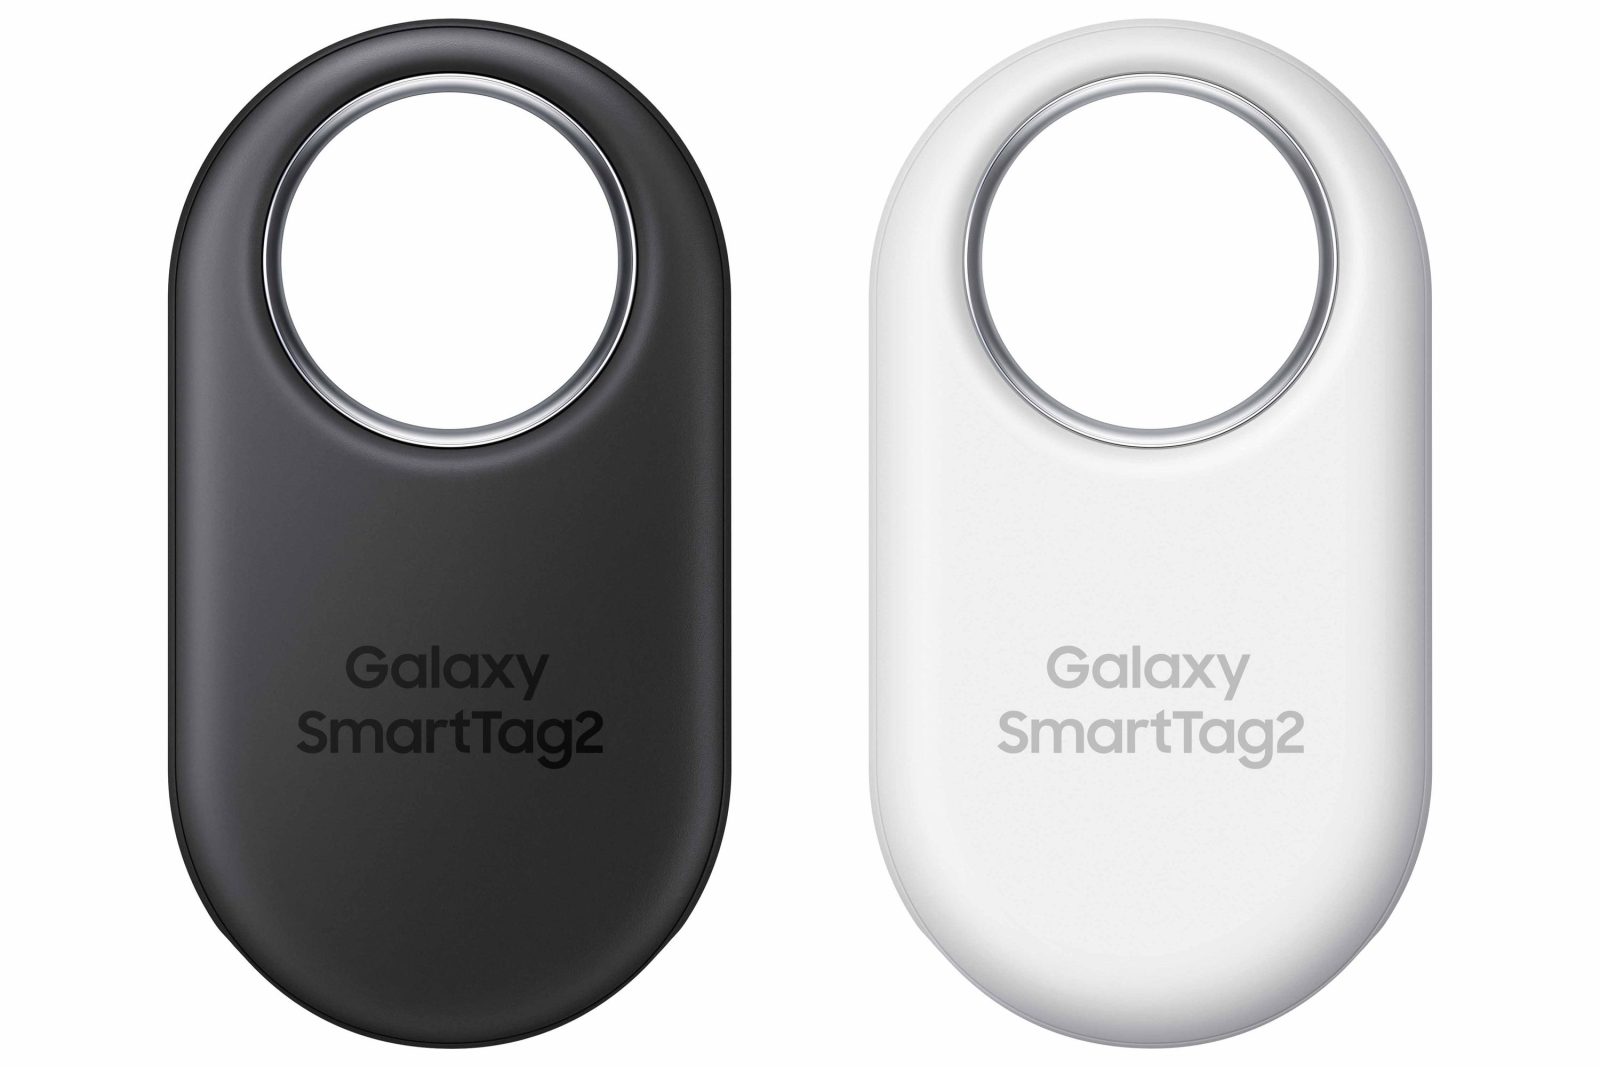 Lokalizator Galaxy SmartTag2 (źródło: Samsung)